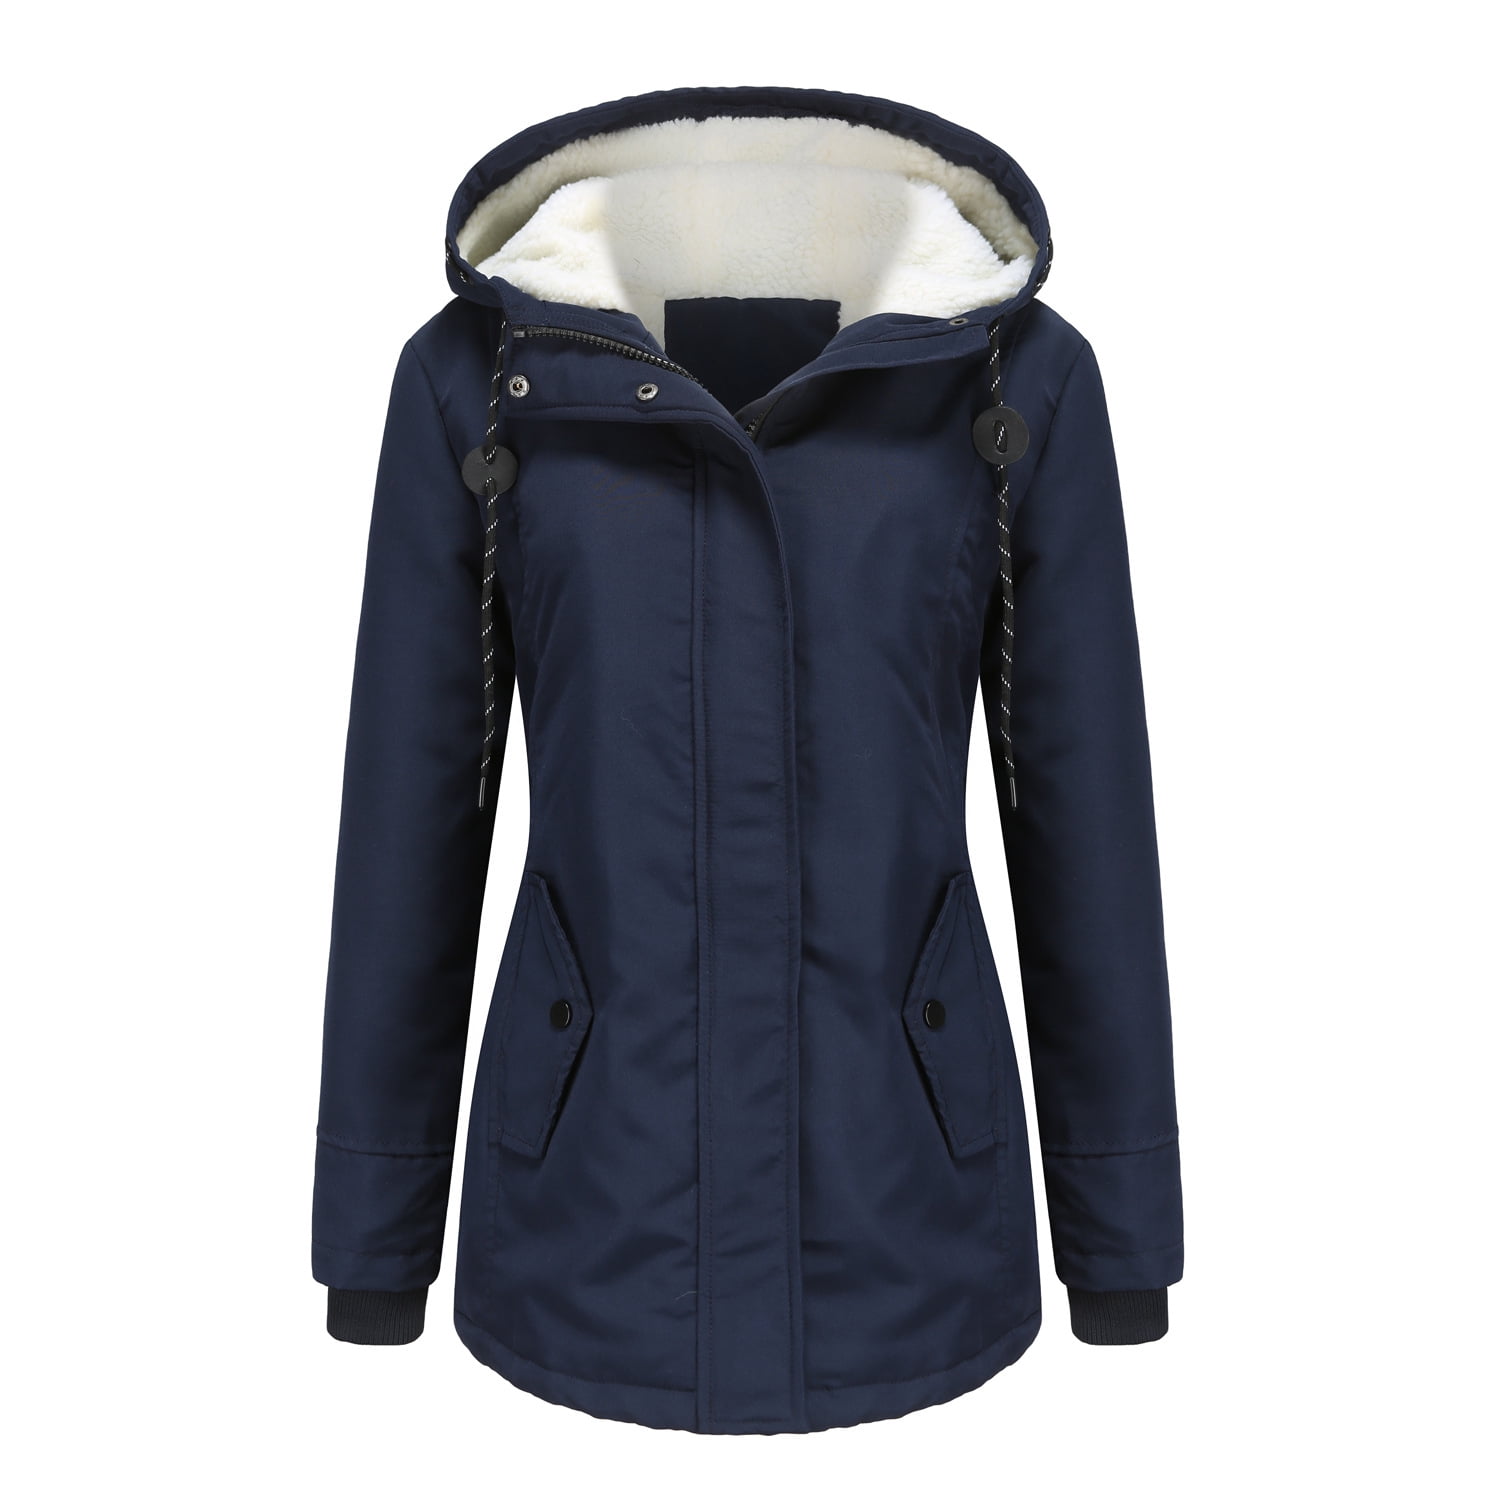 Women's Winter Hooded Coats Fleece Lined Parka Jacket Long Thicken Warm ...